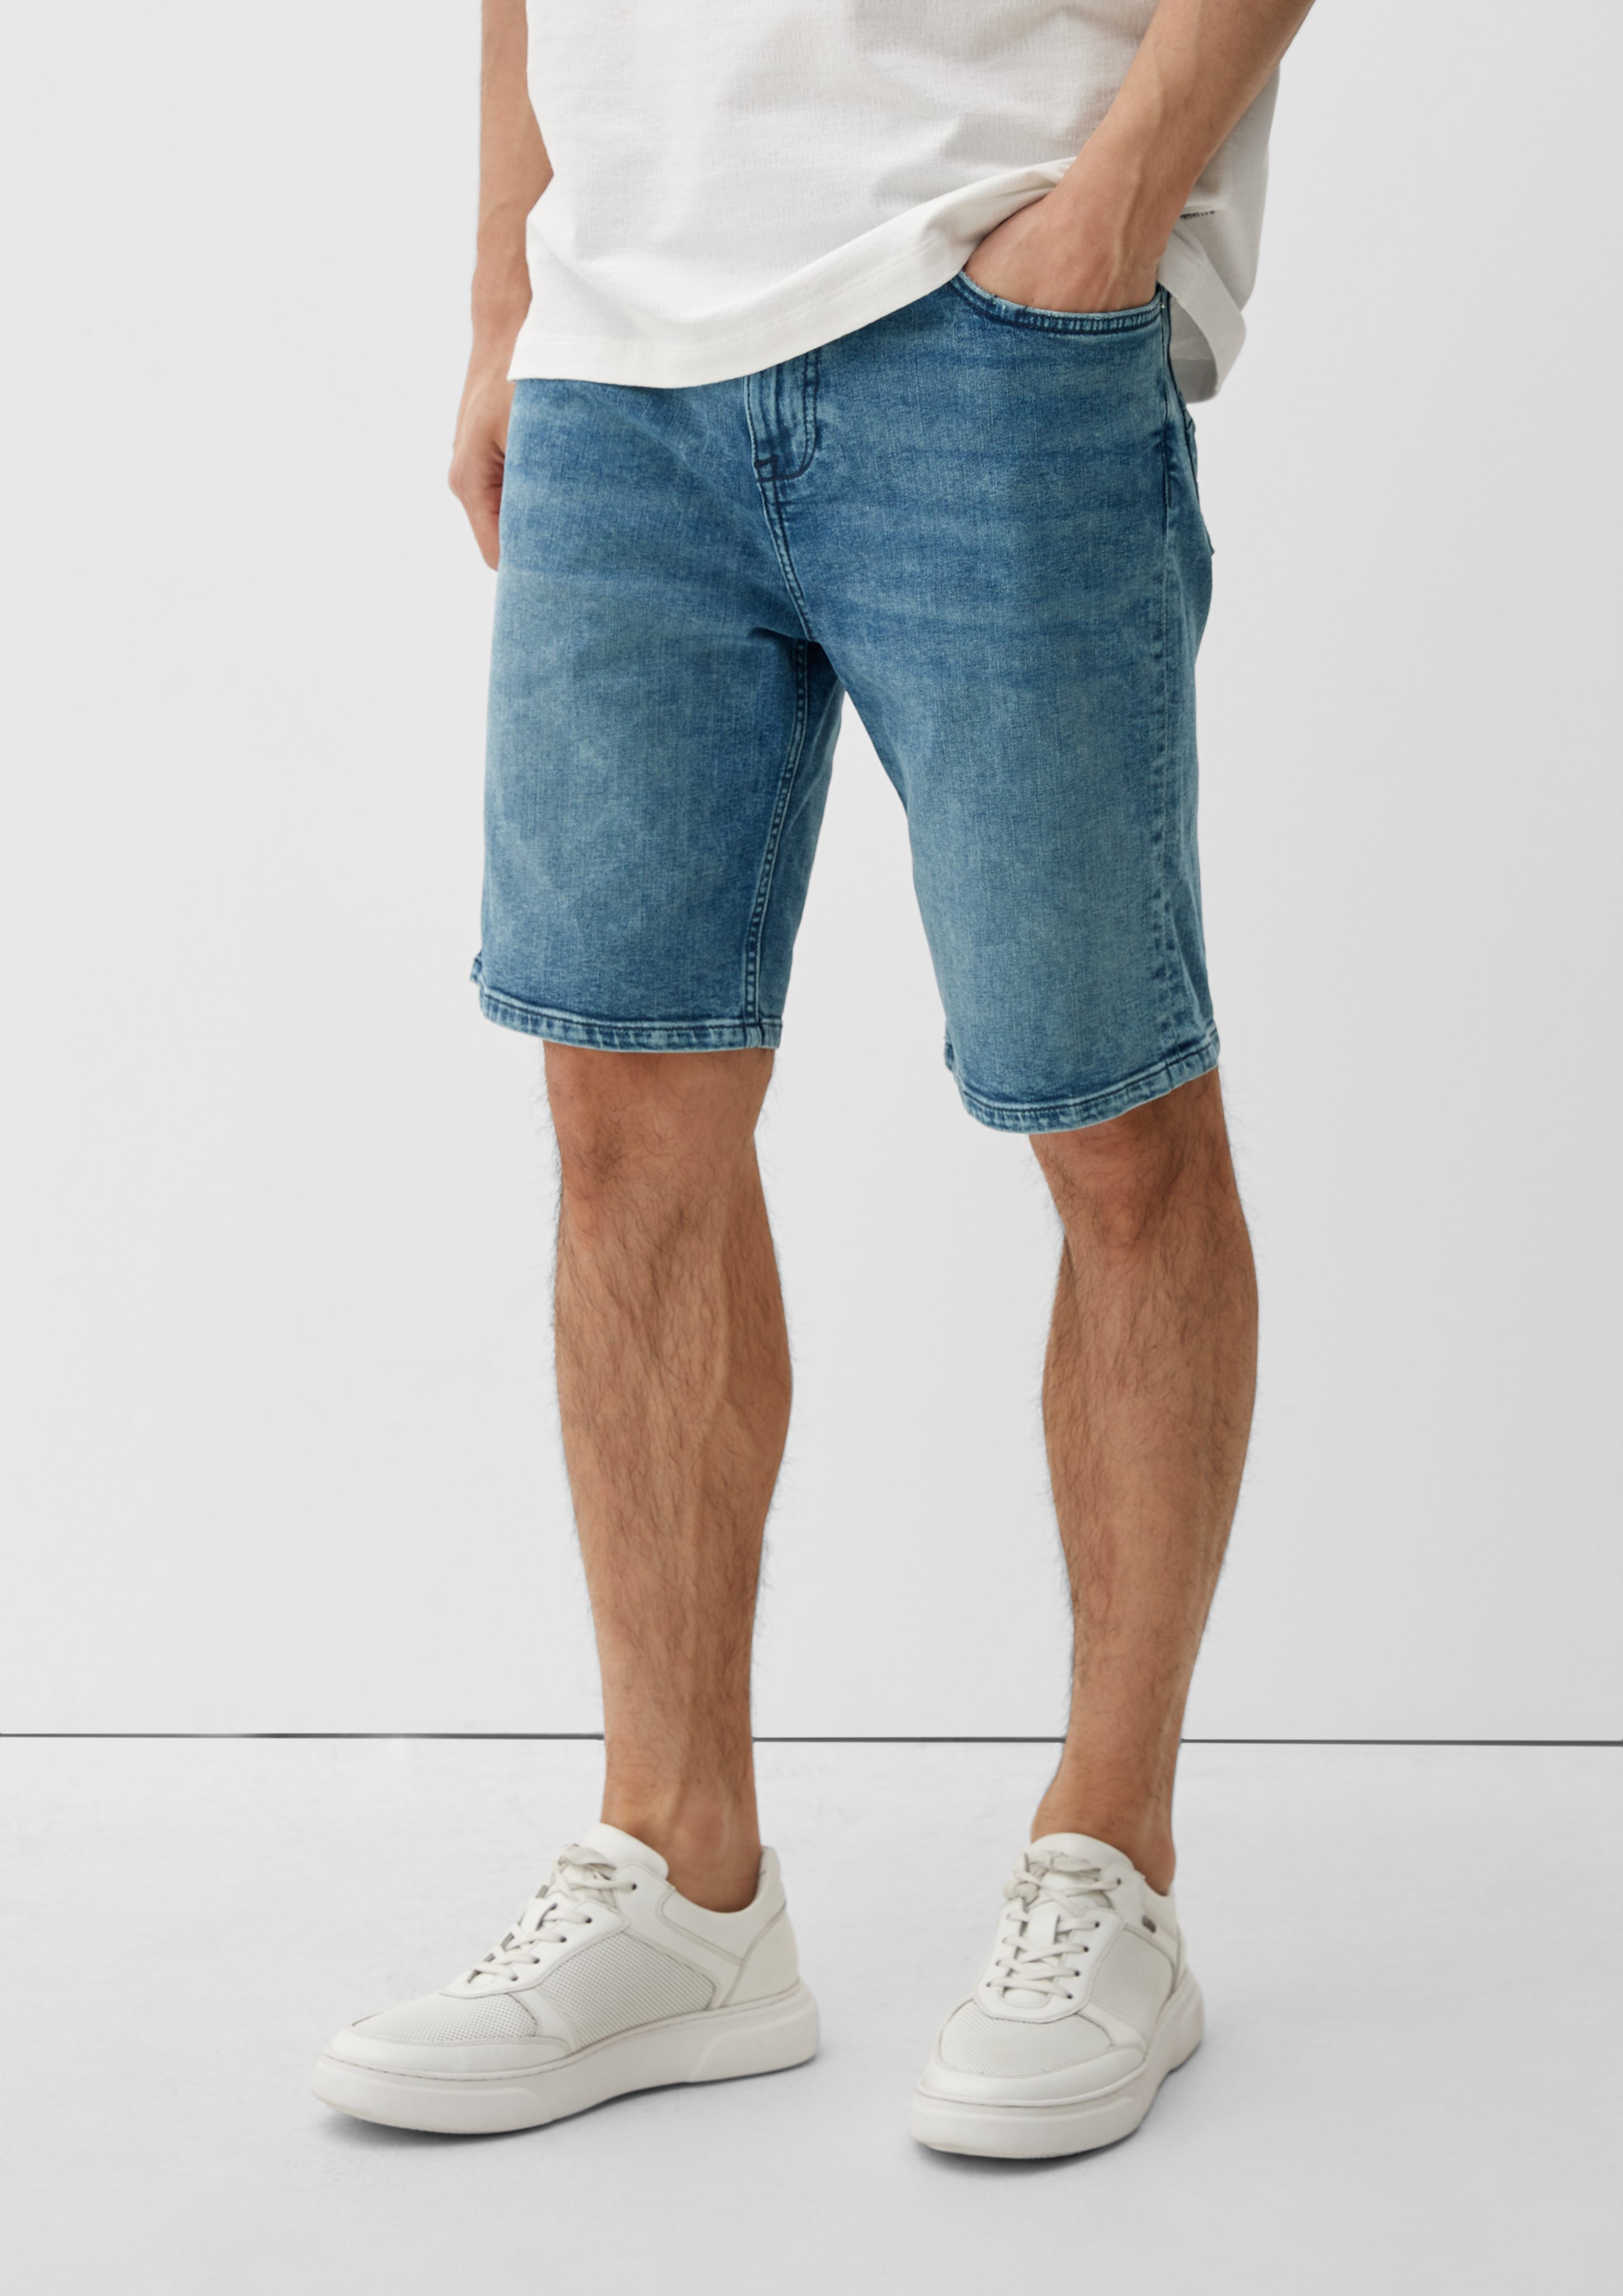 Taschen im mit Slim Leg, einen 5-Pocket-Design Jeansshorts mit hat Mid Fit Reißverschluss, / Straight Jeans Knopfverschluss, Rise / s.Oliver / Keith